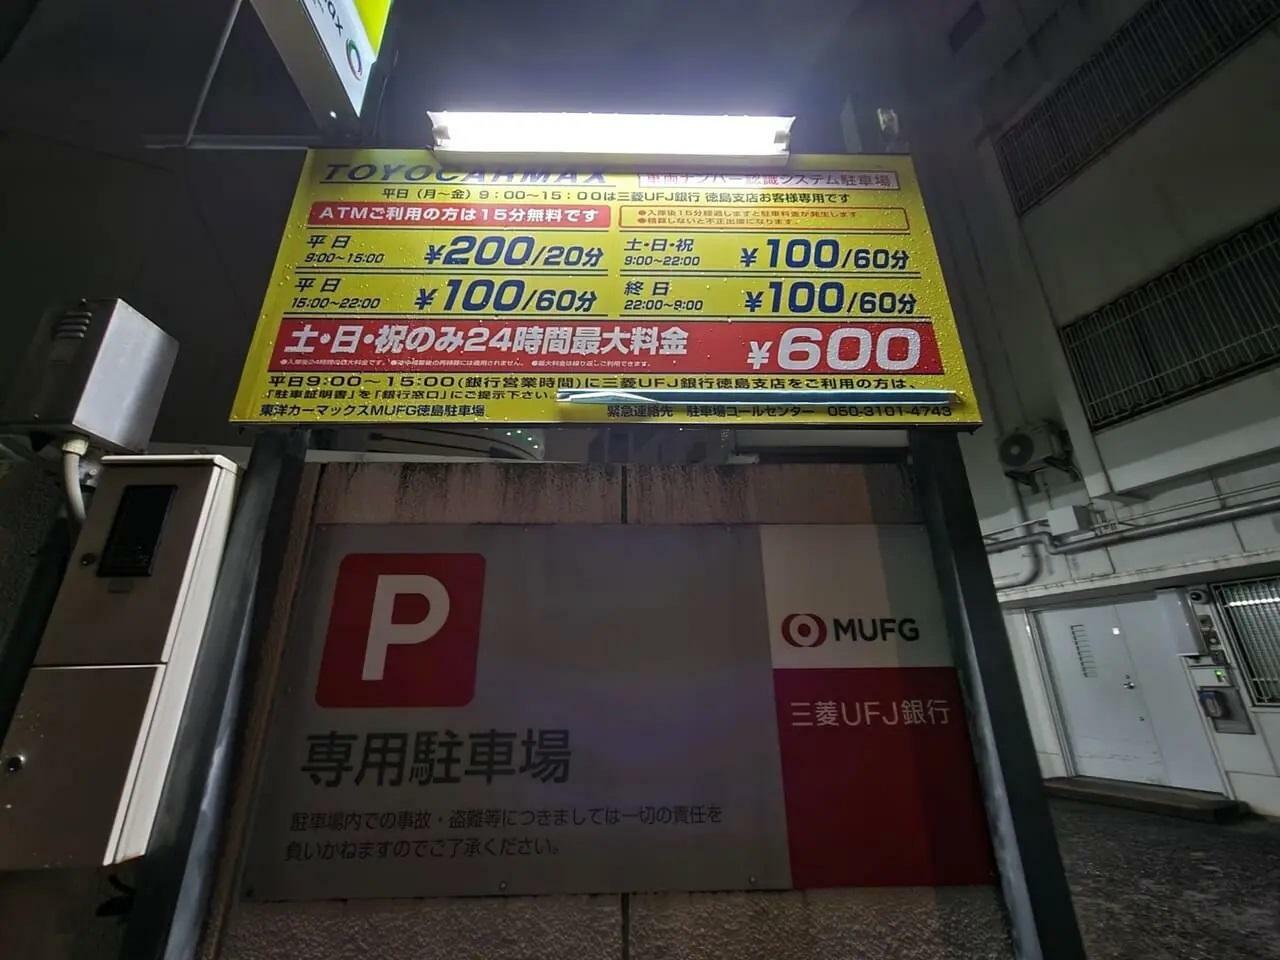 藍場浜付近の駐車場「三菱UFJ徳島支店」。写真は以前に撮影したもの。